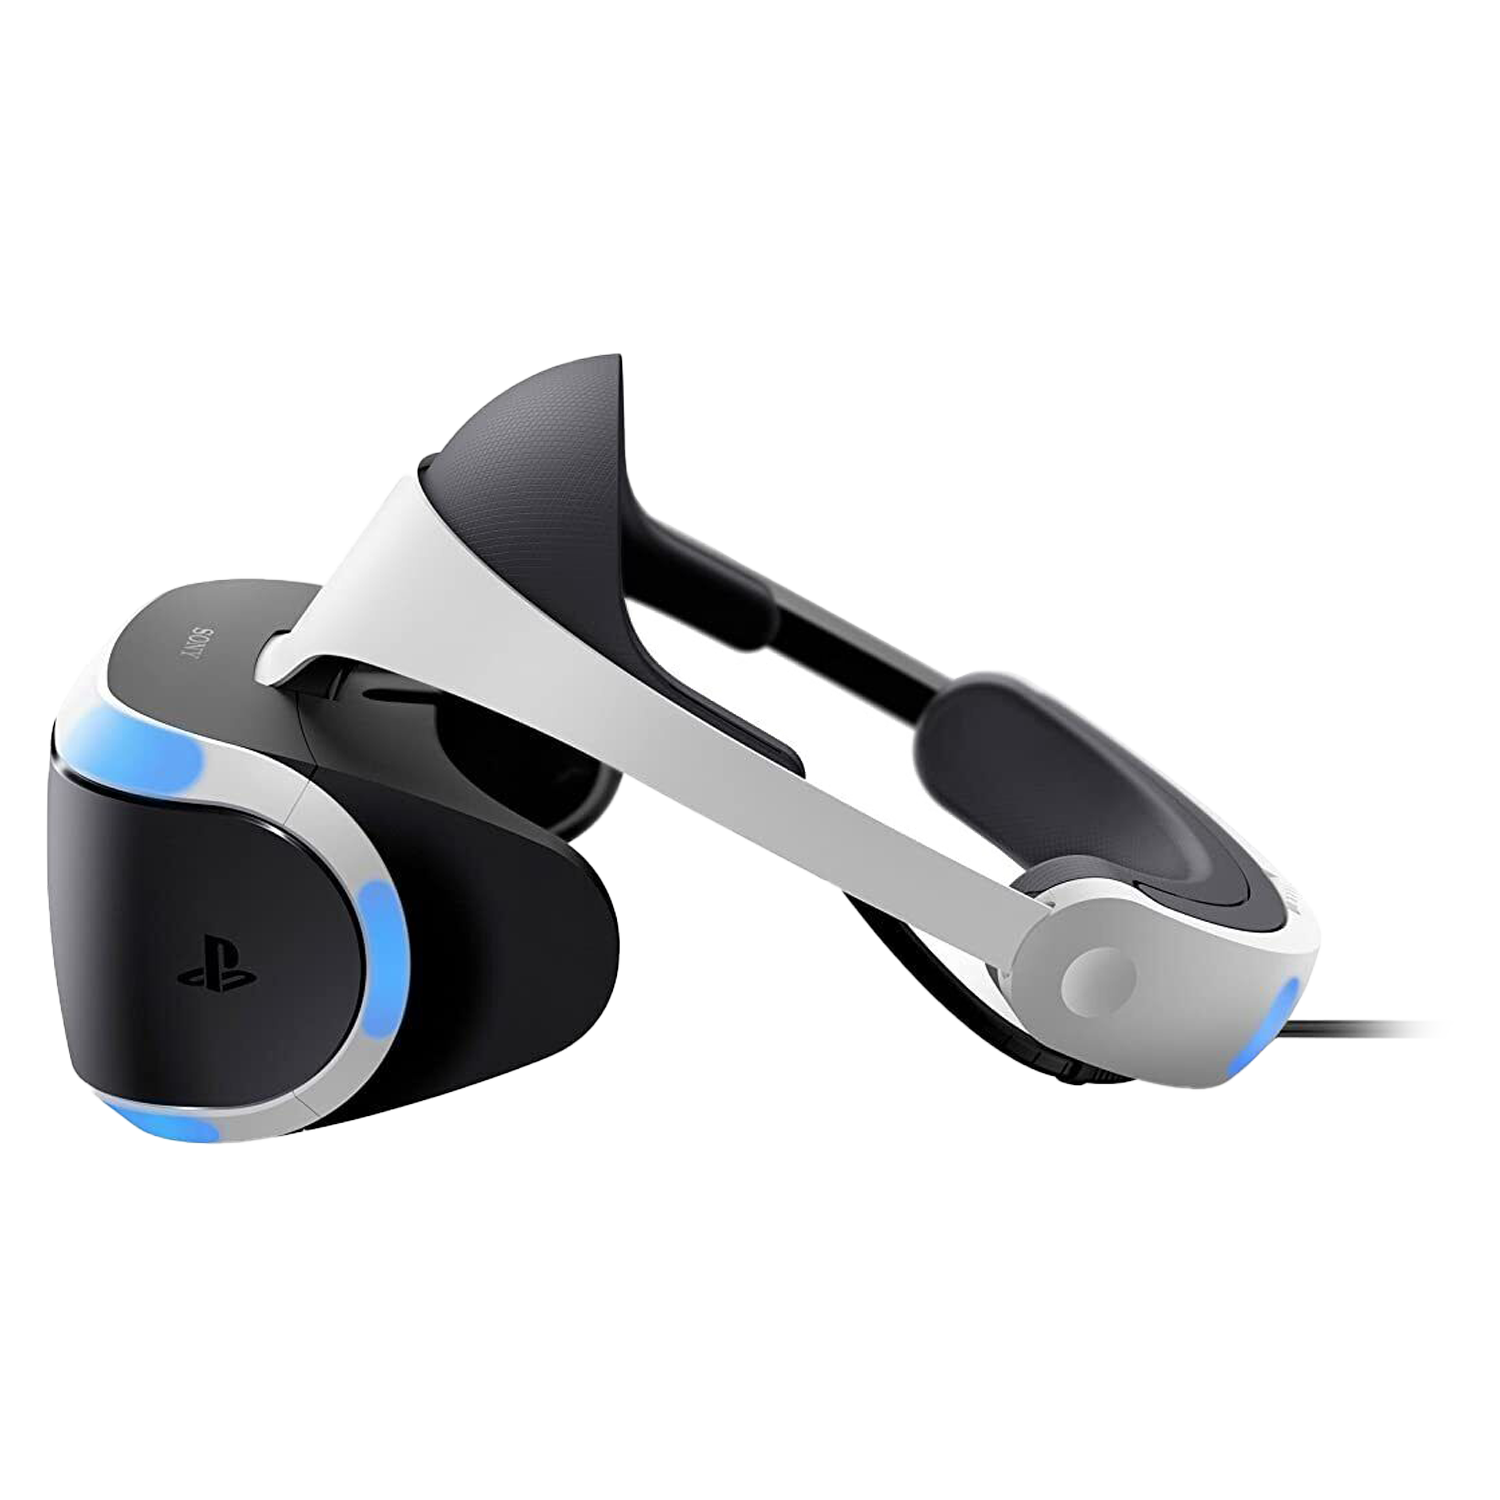 Óculos de Realidade Virtual PlayStation VR / Câmera / VR Worlds - CUH-ZVR2 (Sem Garantia) (Caixa Danificada)
